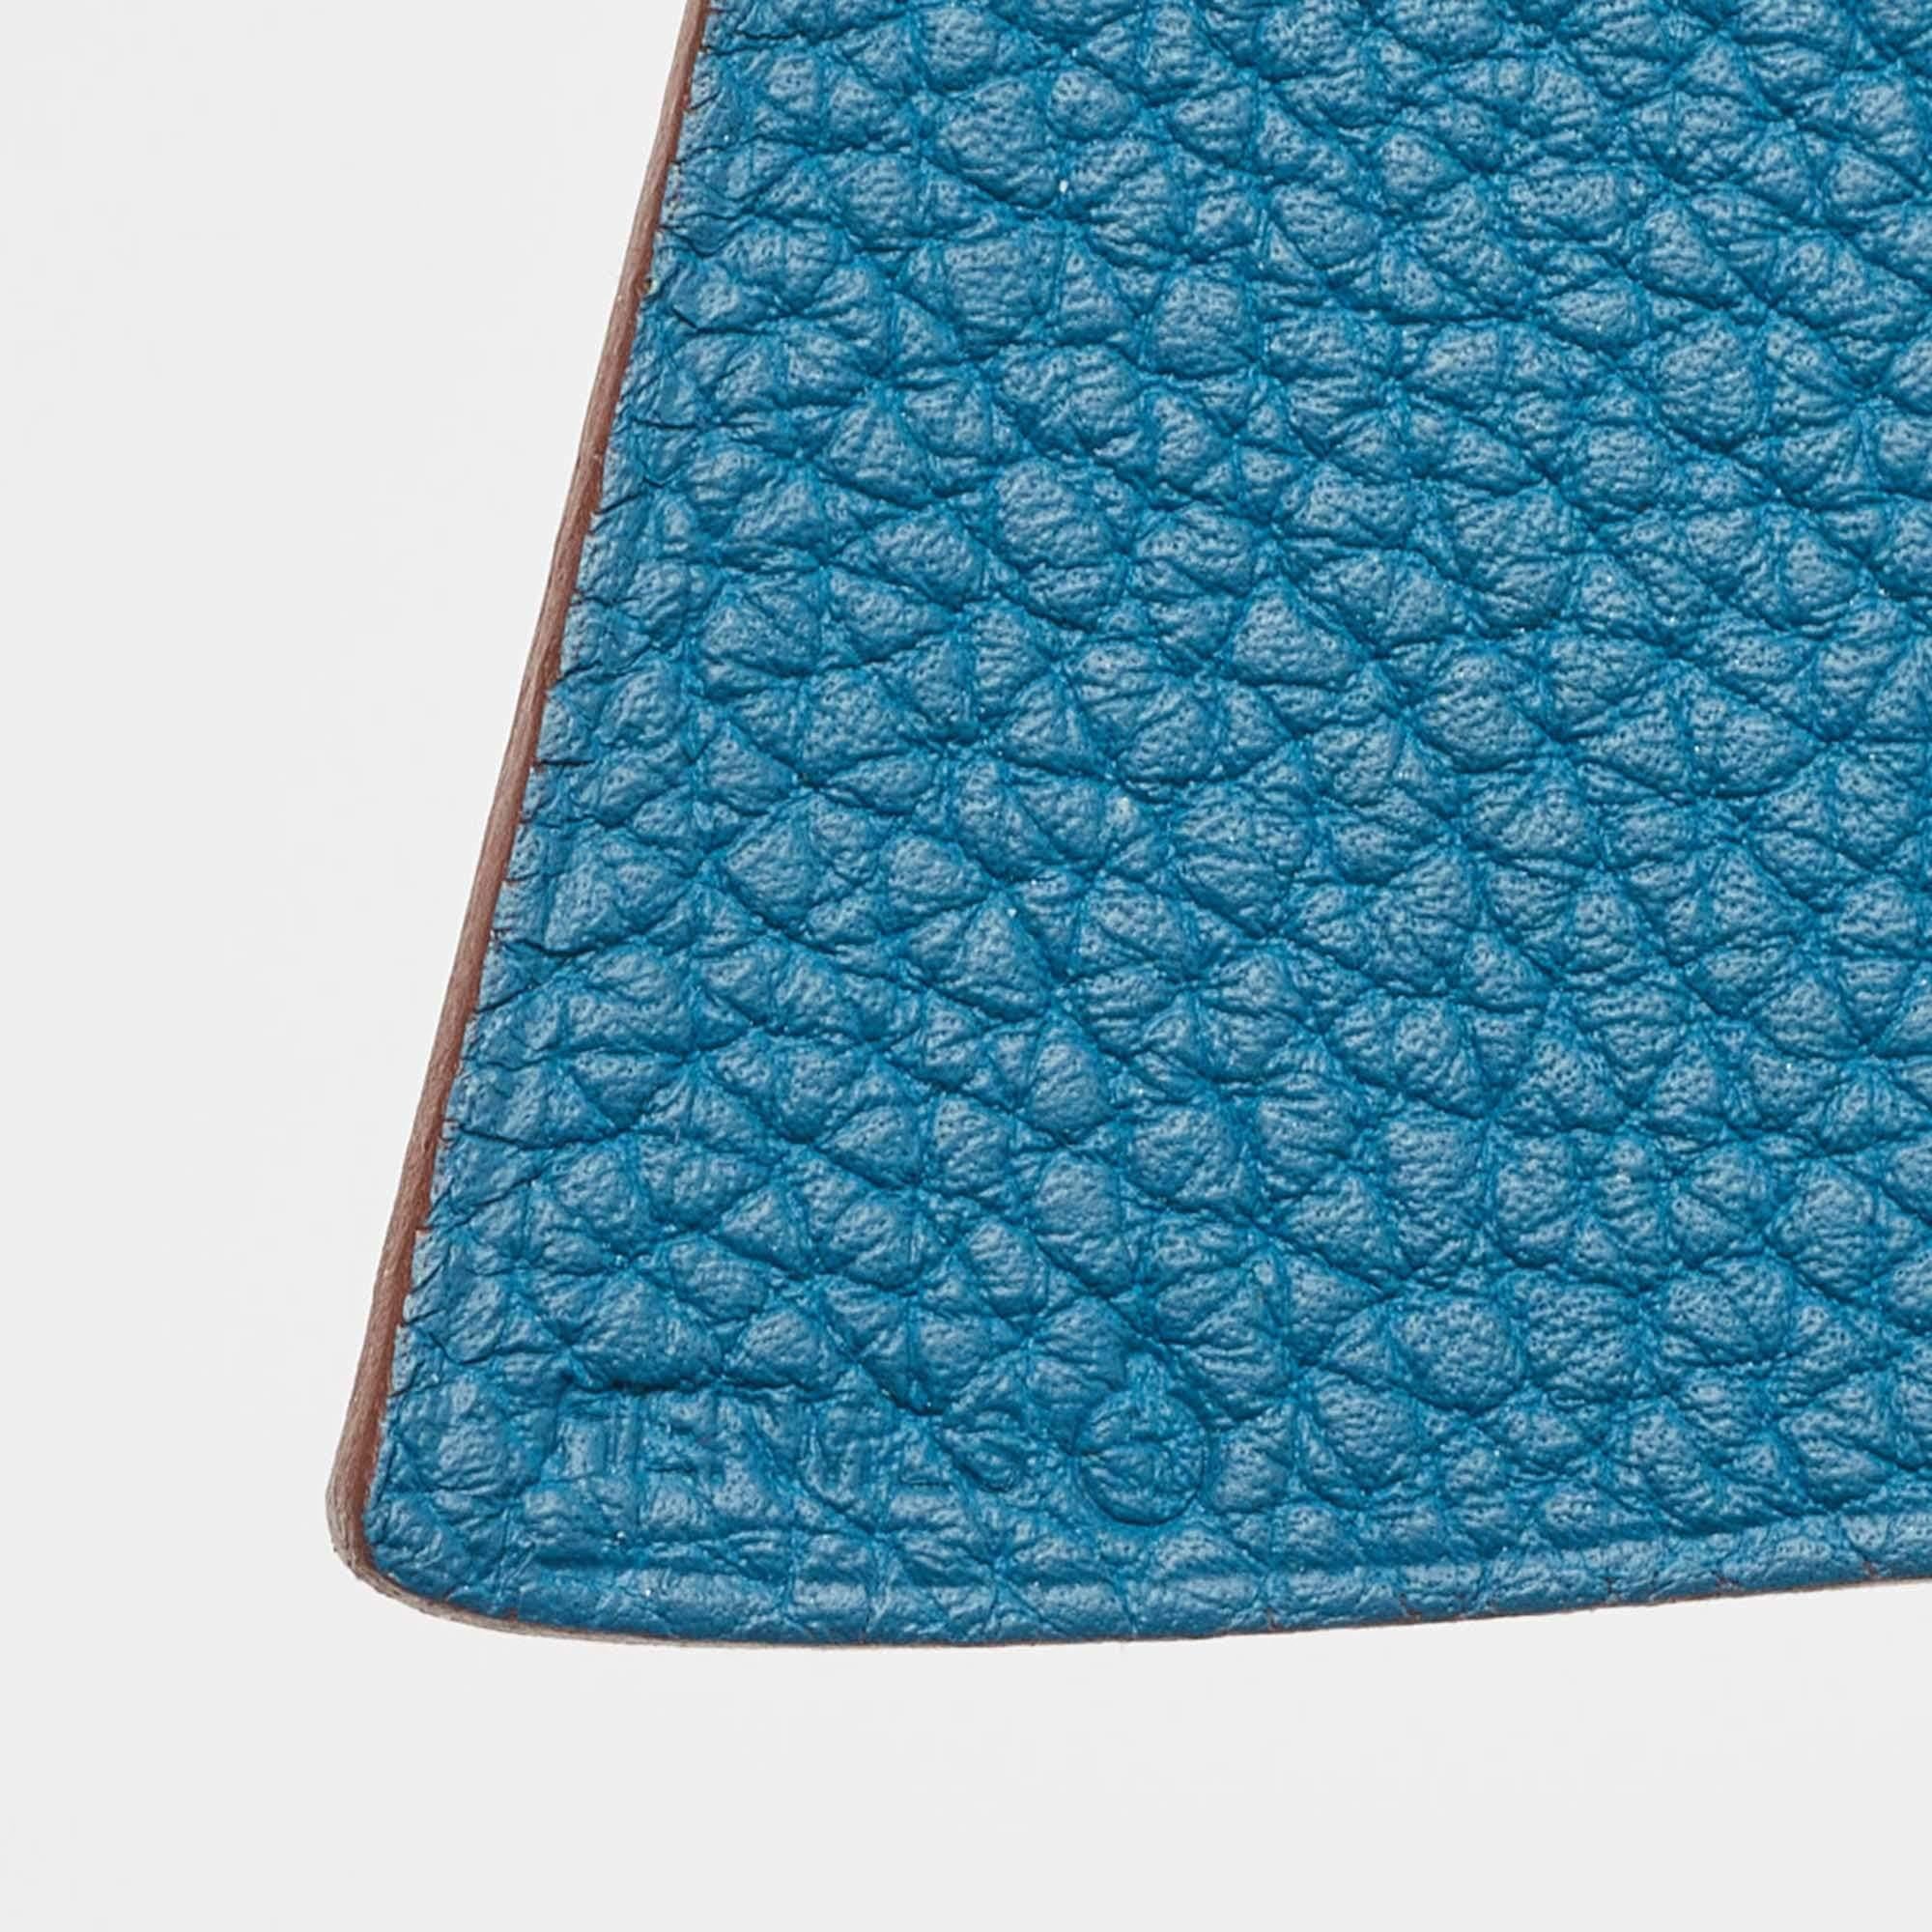 Taschenanhänger bieten eine spielerische Möglichkeit, Ihre Designertaschen mit Accessoires zu versehen. Diese Kreation von Hermès kann auch an Ihren Schlüsseln befestigt werden.

